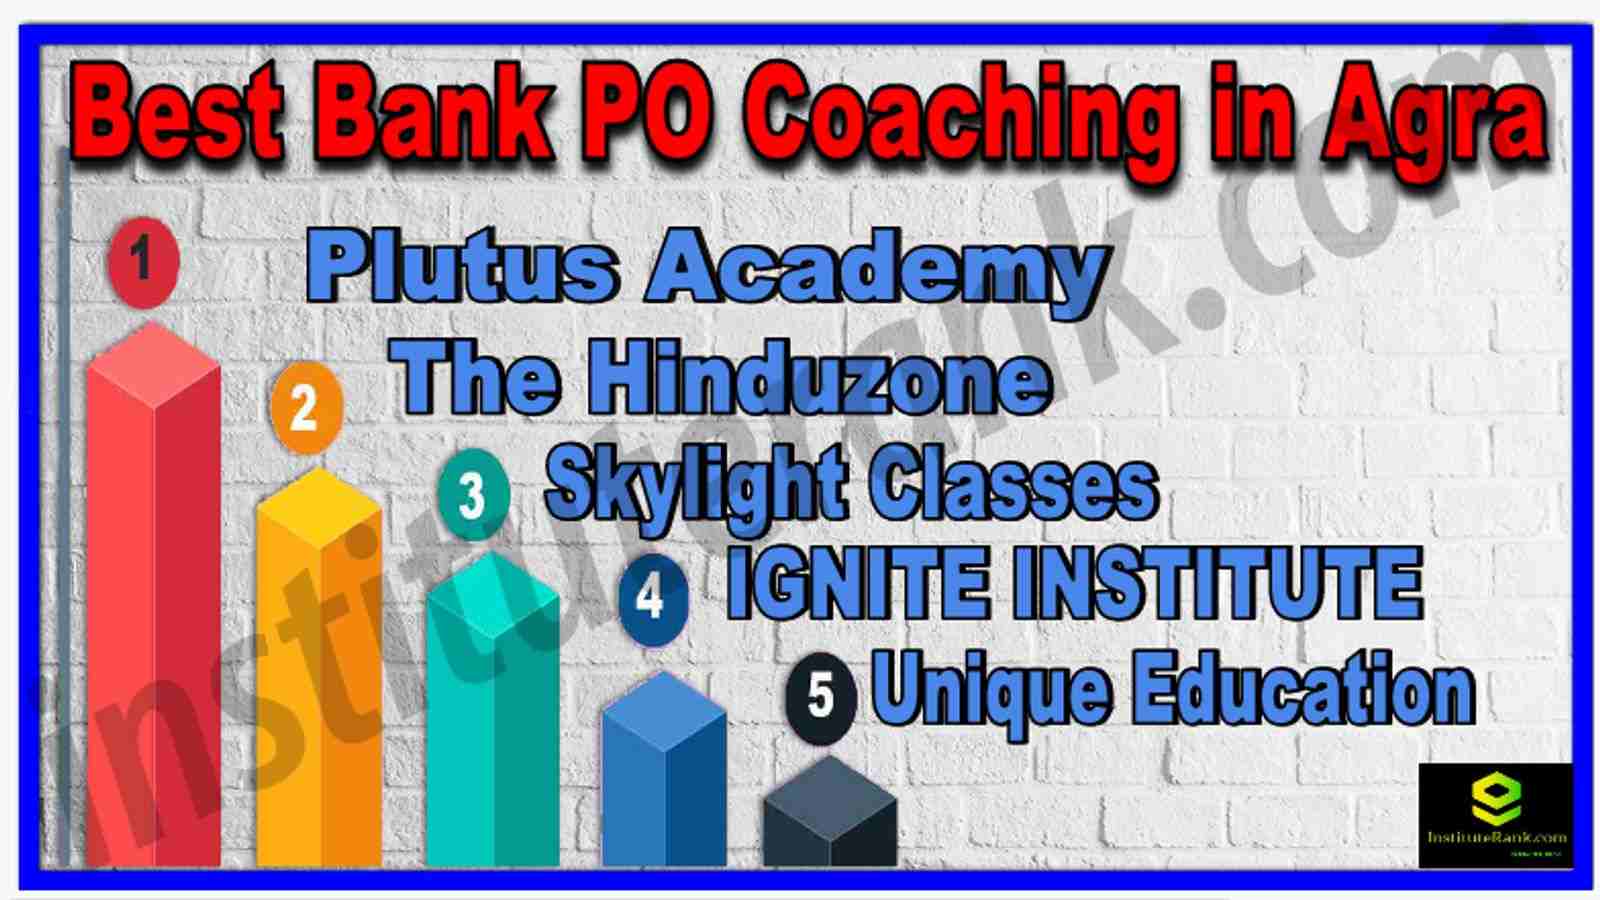 Best Bank PO Coaching in Agra